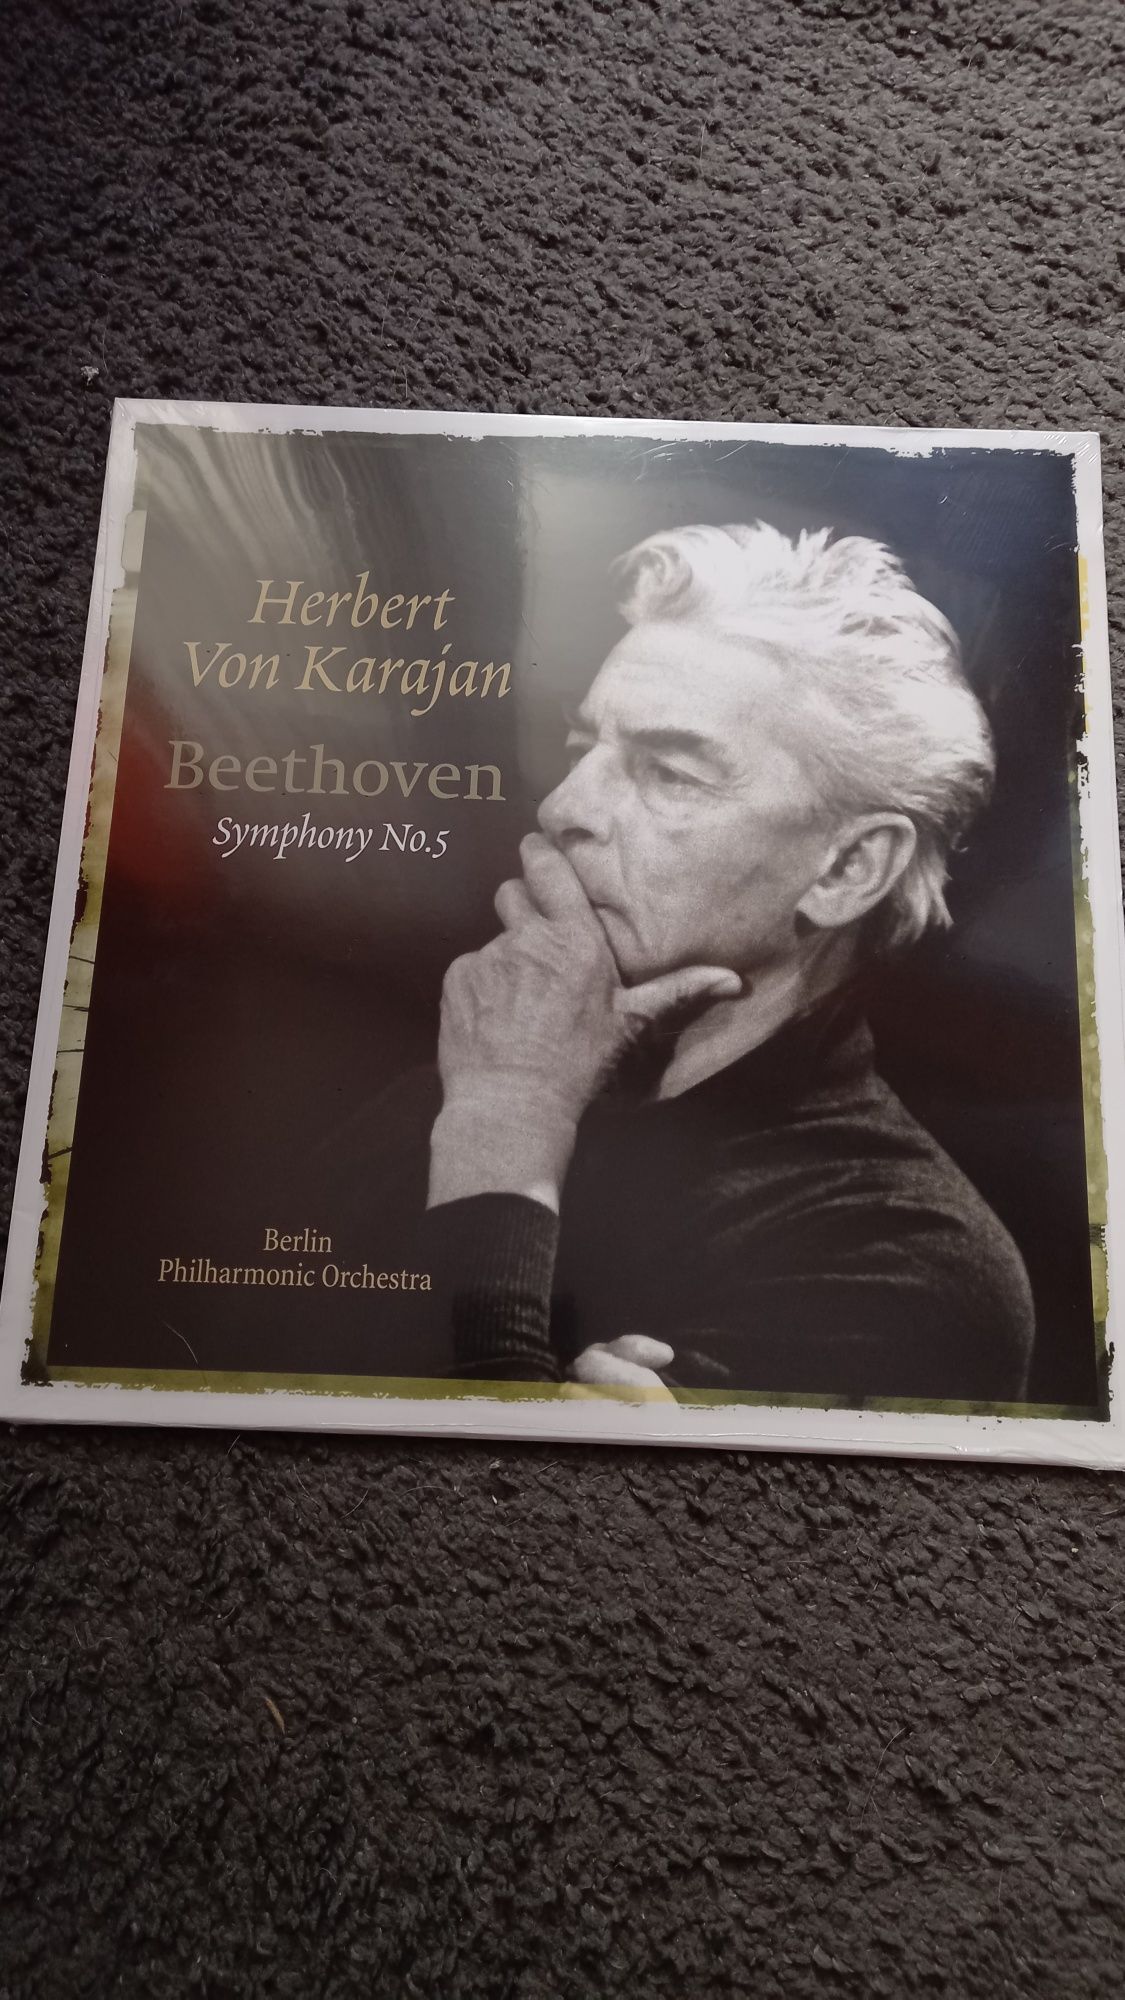 Hetbert von Karajan winyl